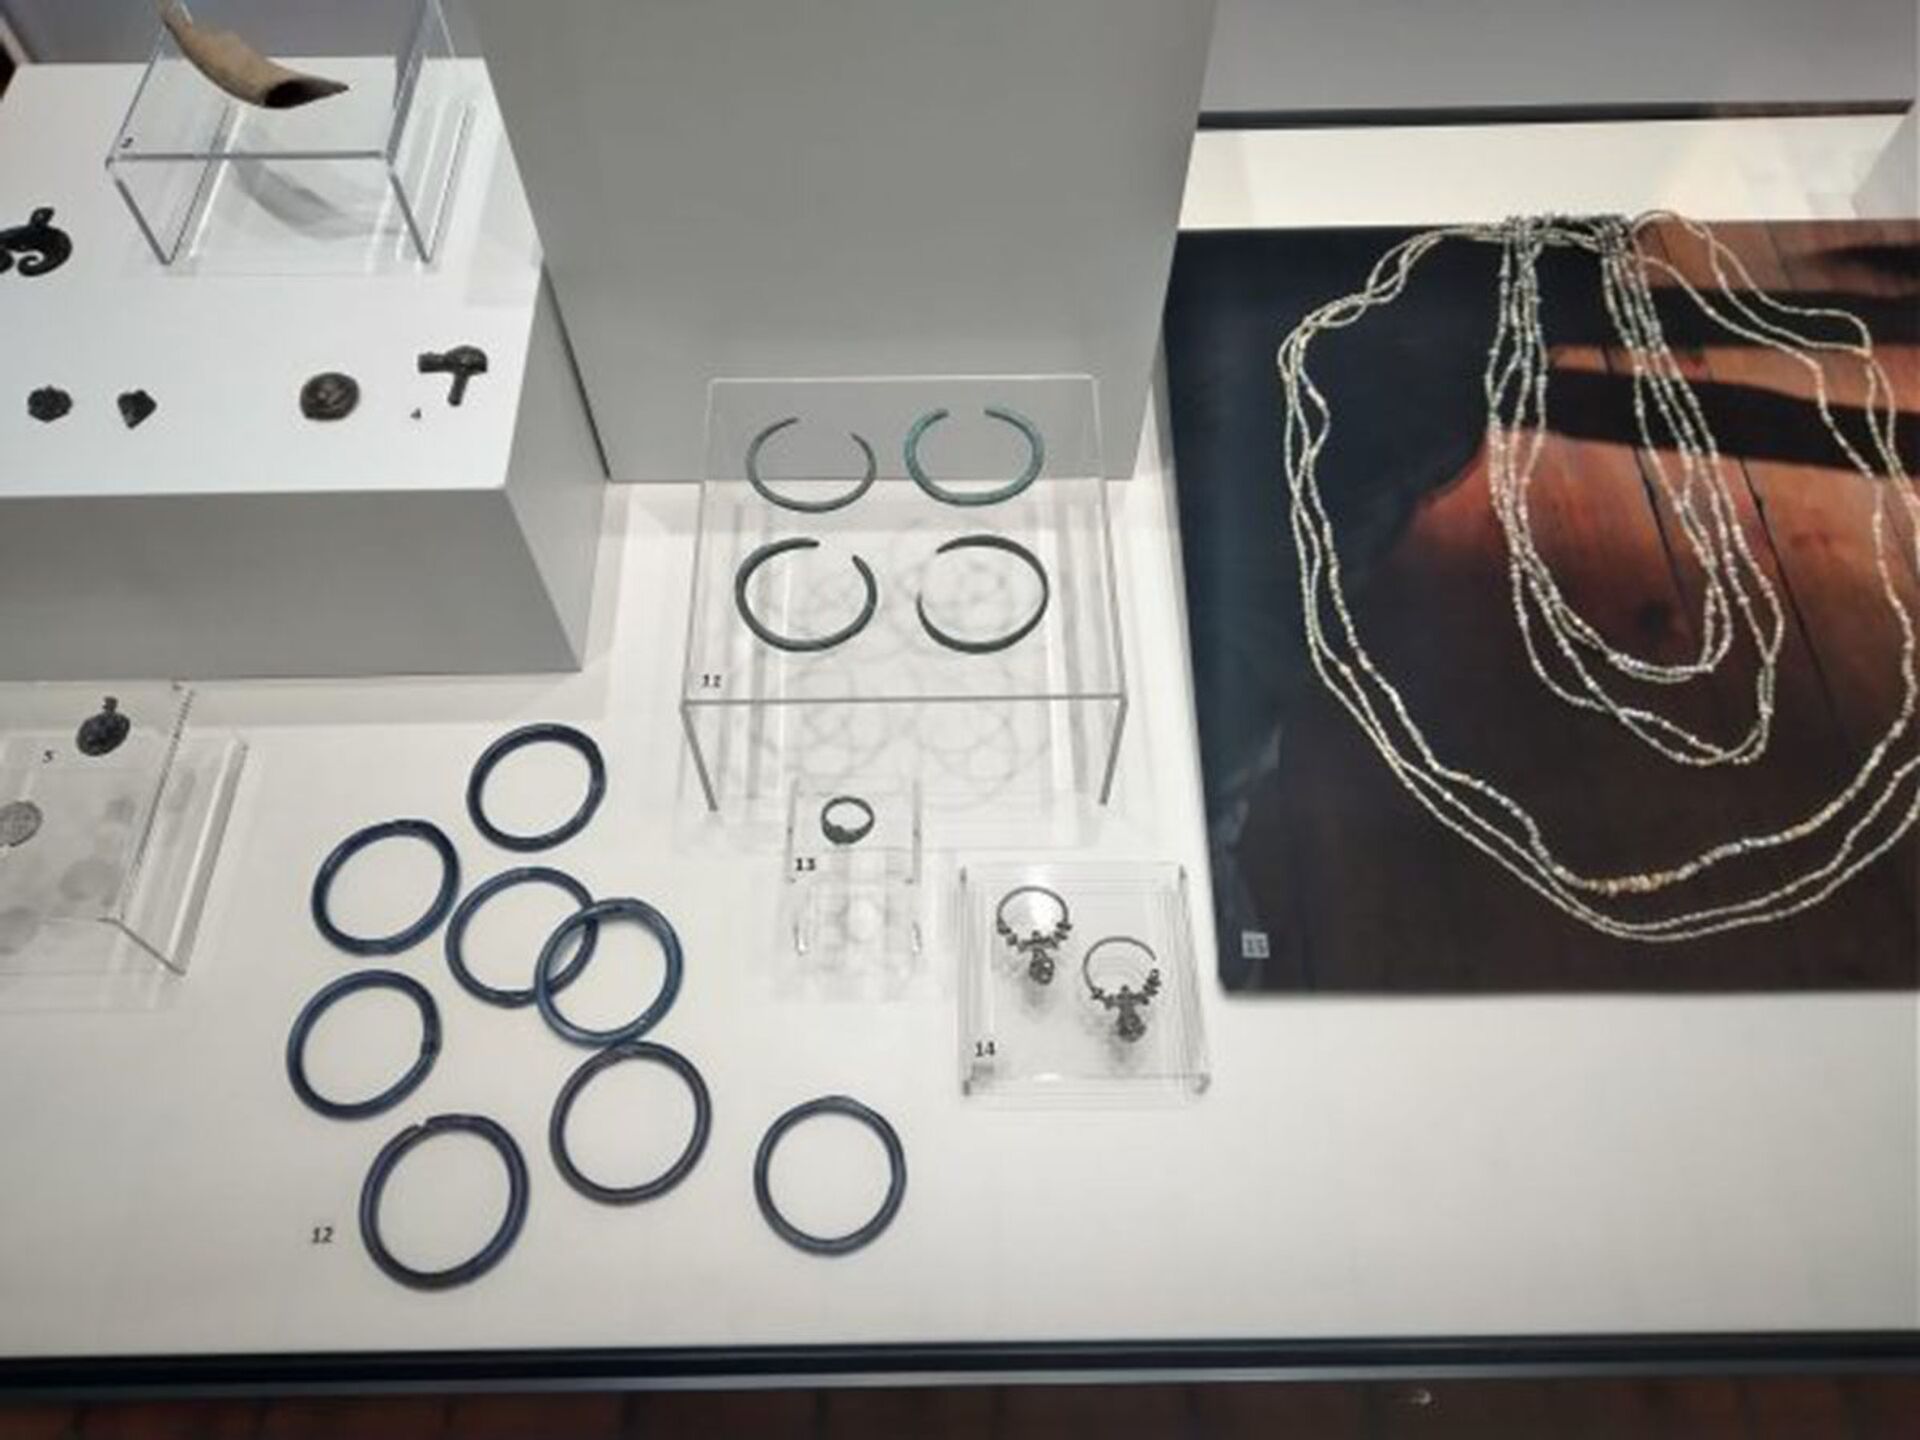 Arqueólogos descobrem grande coleção de joias do Império Bizantino na Bulgária (FOTOS) - Sputnik Brasil, 1920, 13.04.2021